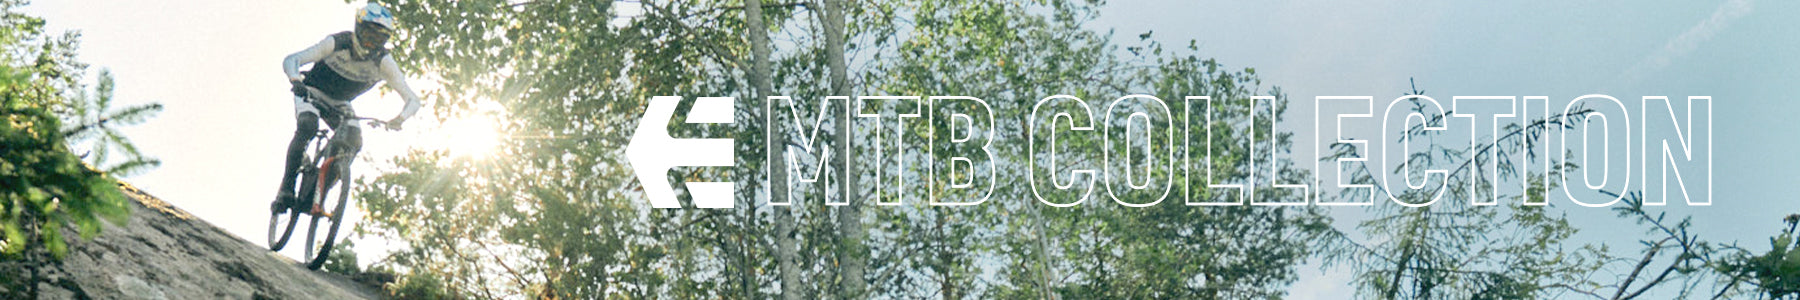 MTB / BMX / BIKE